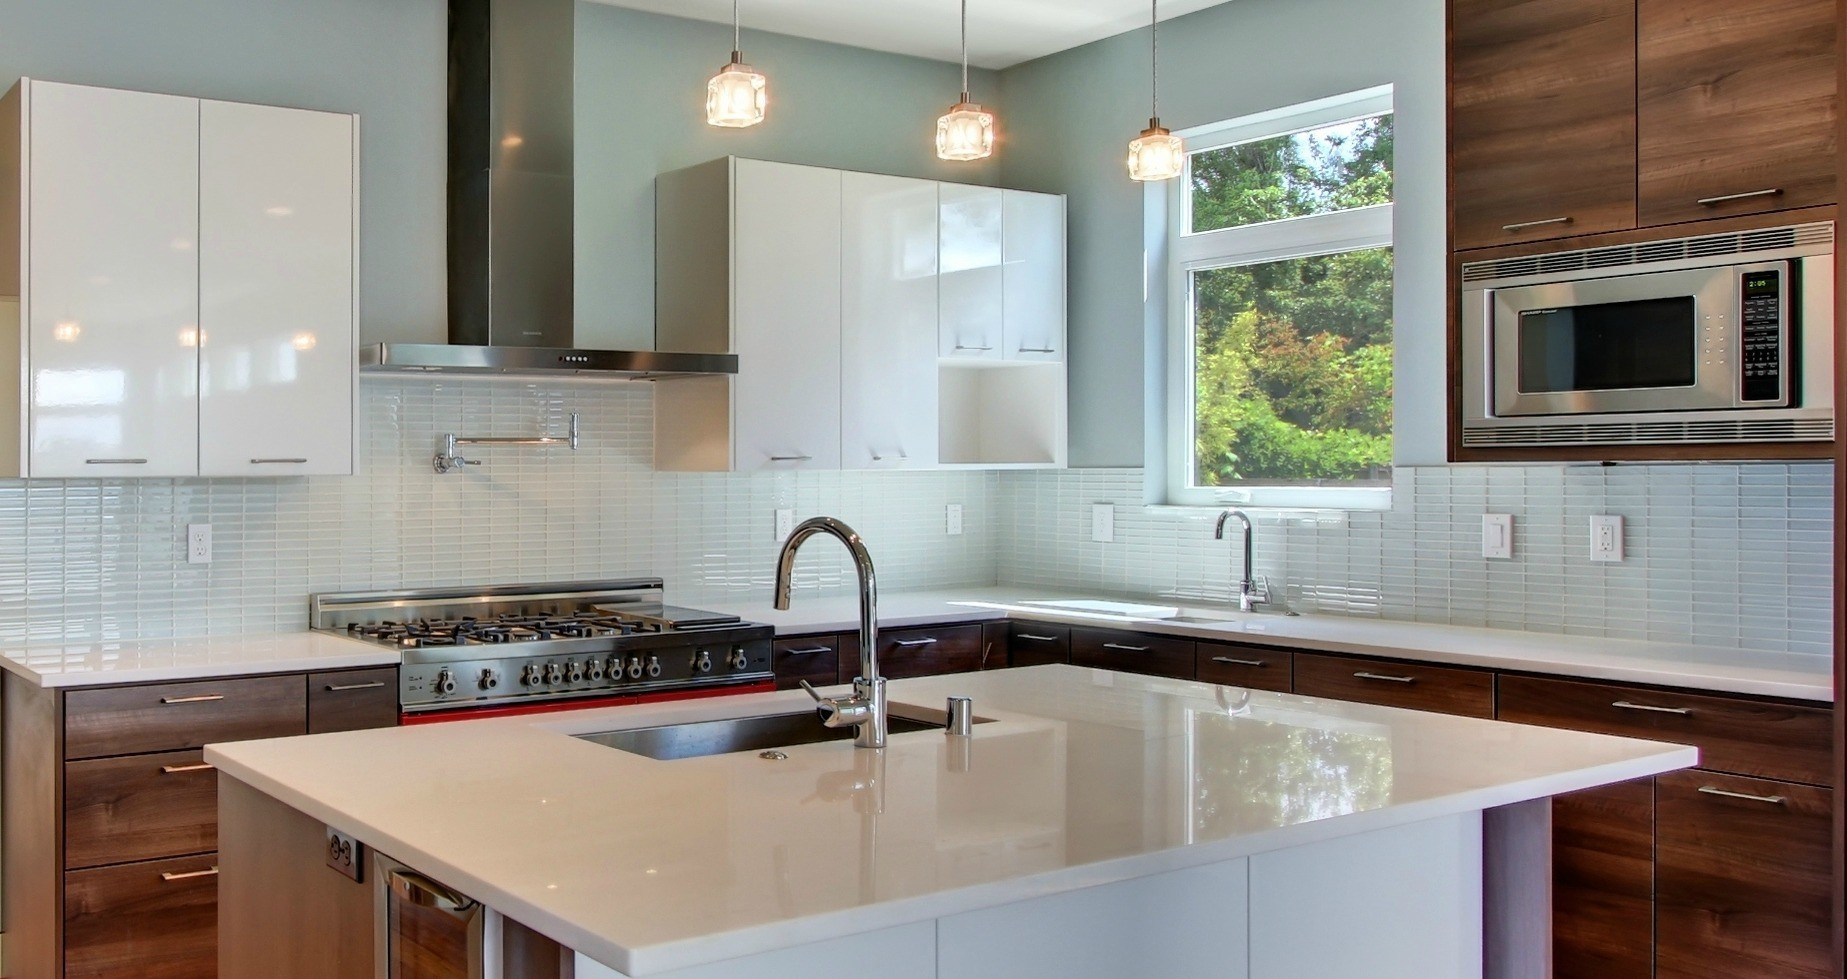 Glass Subway Tile Kitchen Backsplash
 Tips on Choosing the Tile for Your Kitchen Backsplash